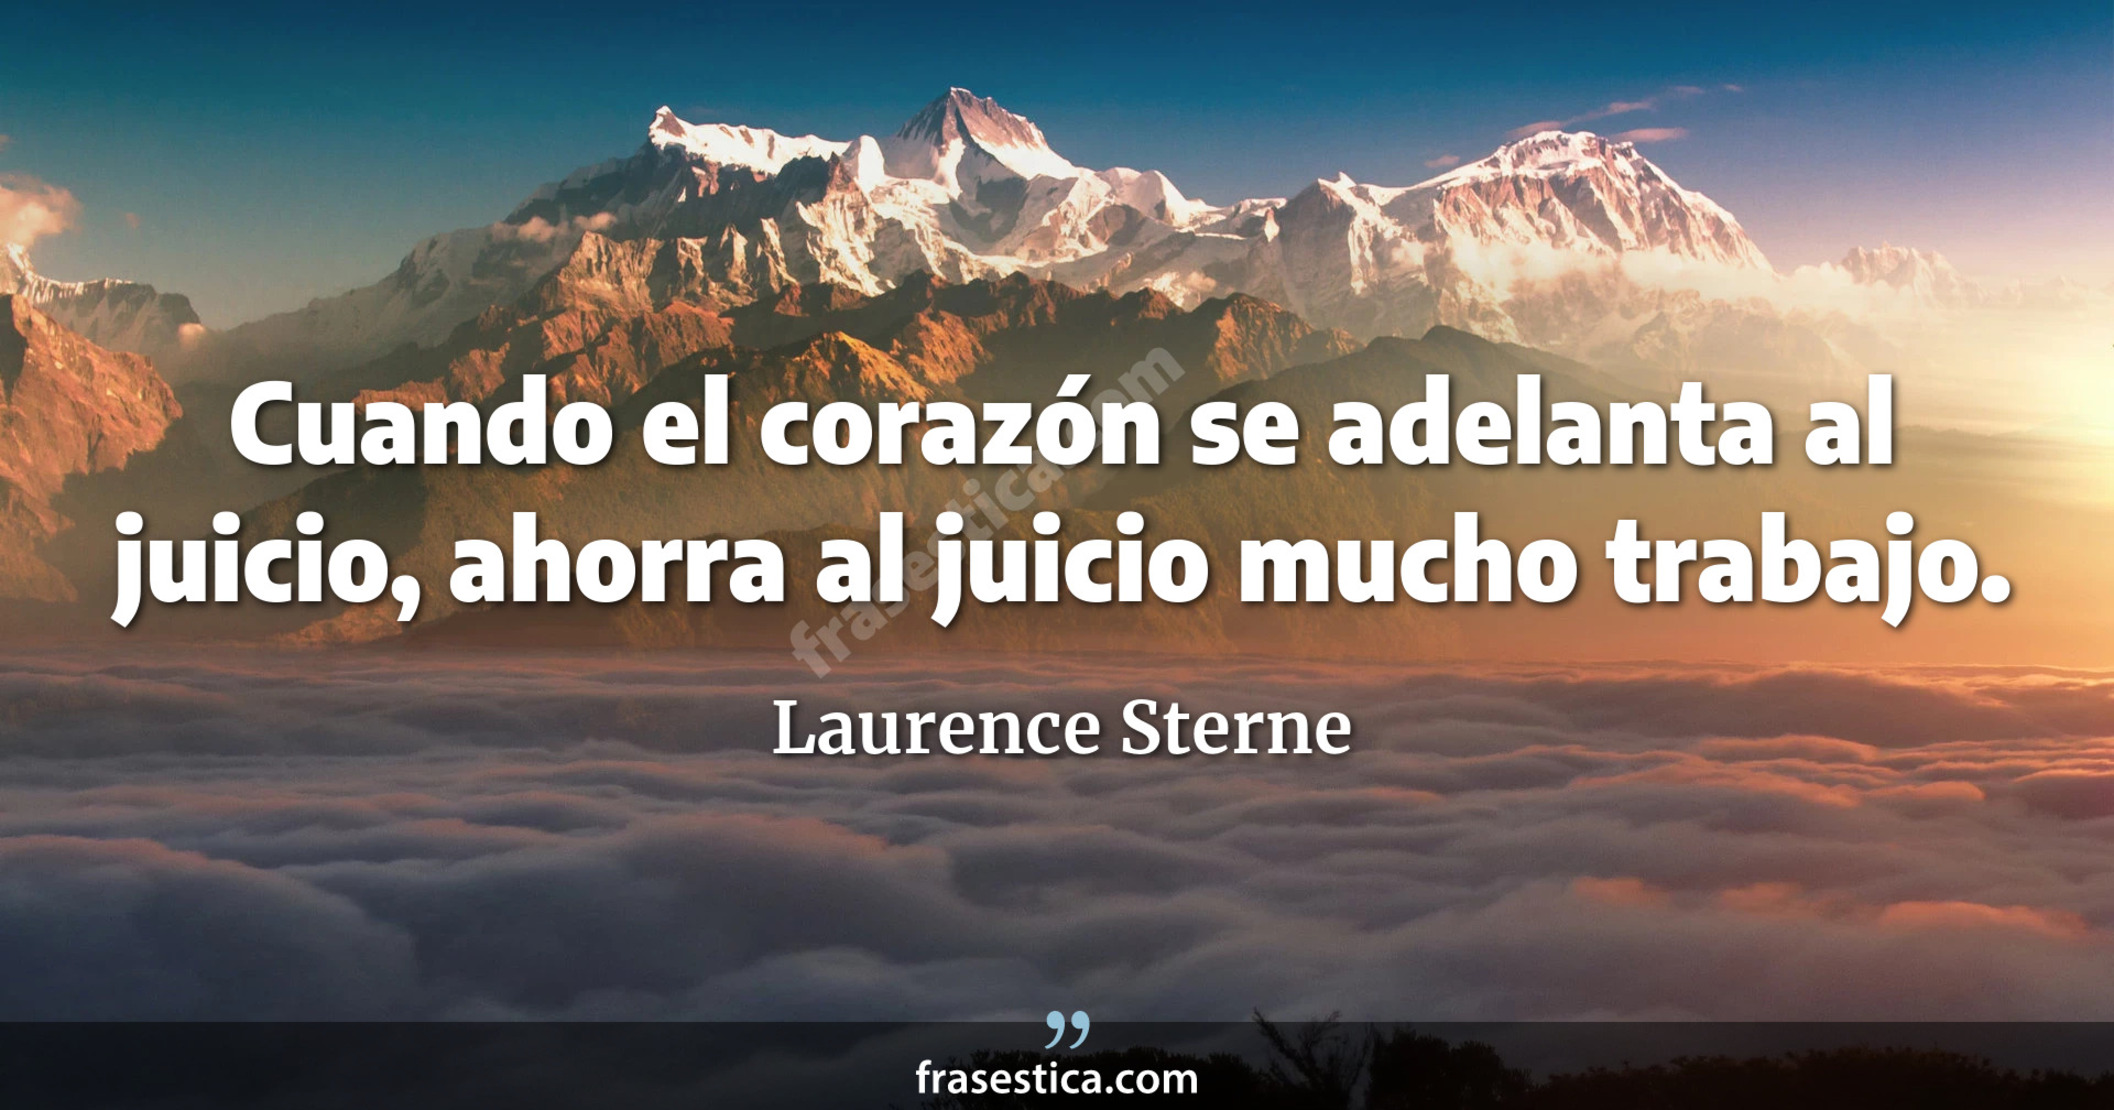 Cuando el corazón se adelanta al juicio, ahorra al juicio mucho trabajo. - Laurence Sterne